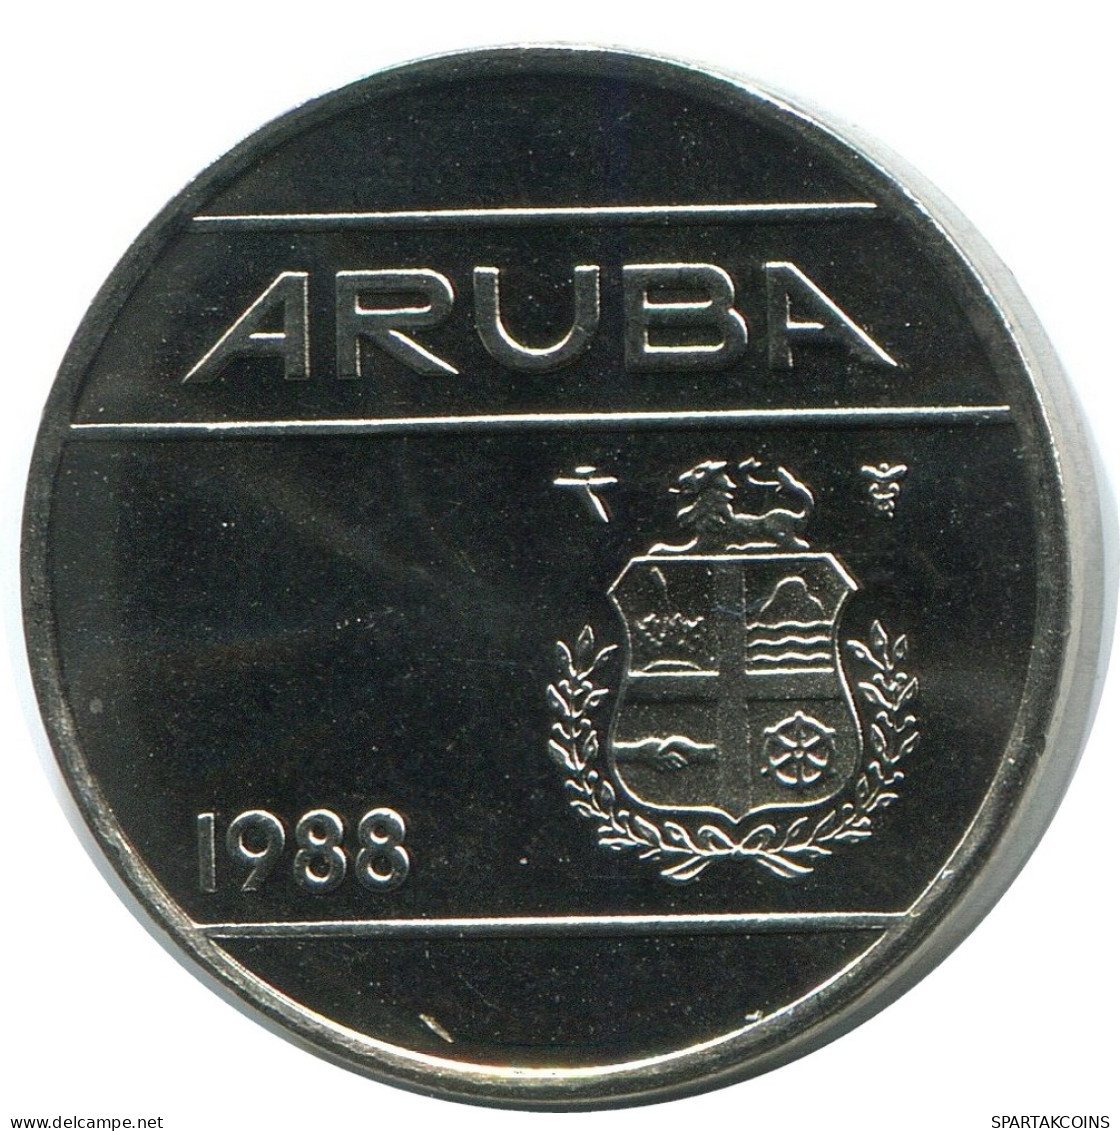 25 CENTS 1988 ARUBA Pièce (From BU Mint Set) #AH069.F - Aruba